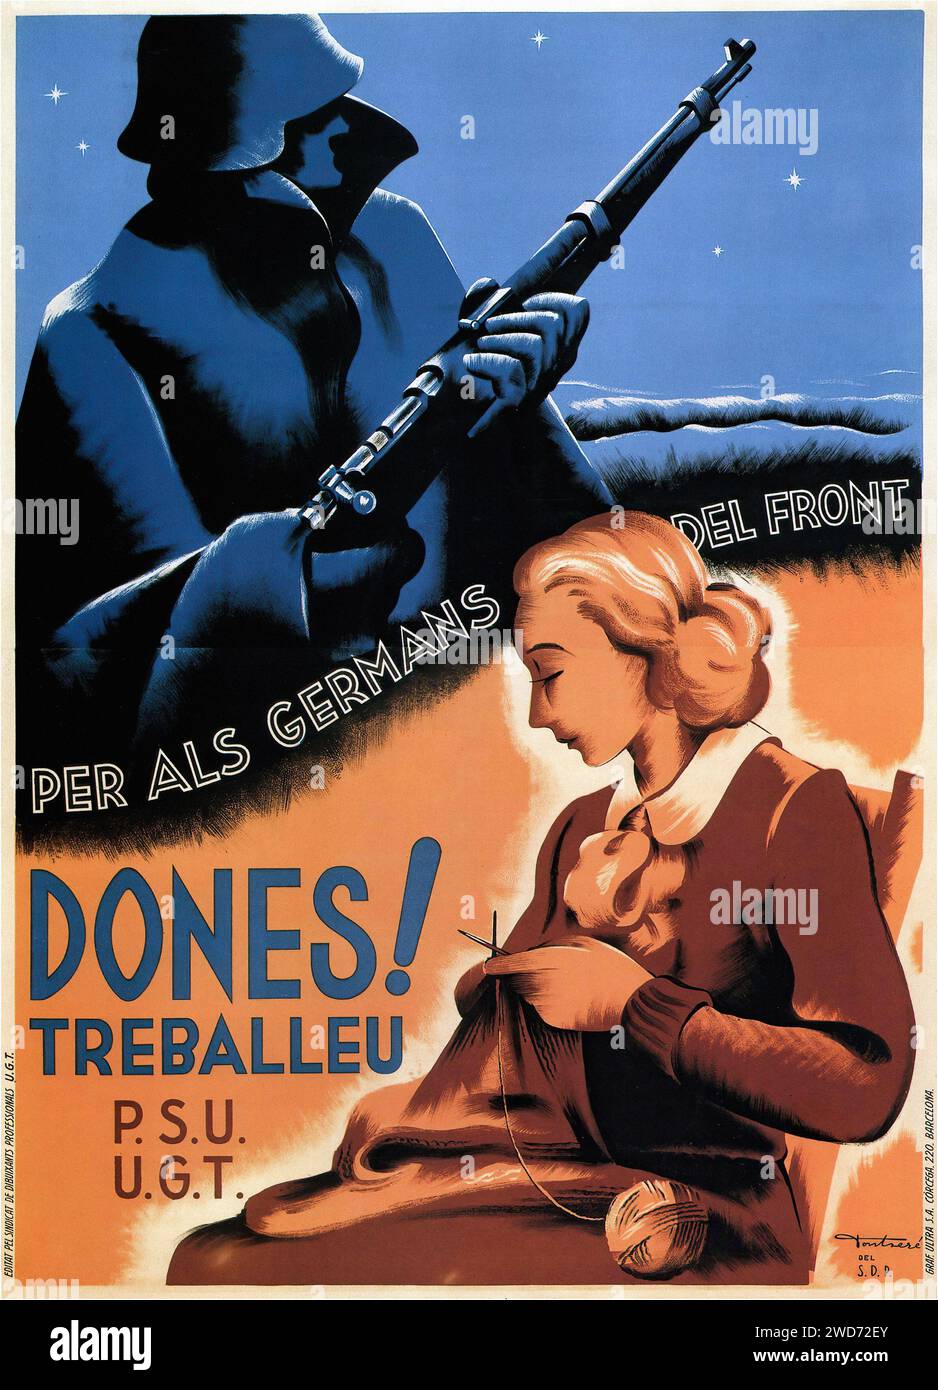 'DONES! TREBALLEU PER ALS GERMANS DEL FRONT P.S.U. U.G.T.' 'WOMEN! Travail pour vos frères au front P.S.U. U.G.T.' l'image montre une affiche de propagande de guerre civile espagnole vintage encourageant les femmes à soutenir l'effort de guerre en travaillant. Il présente une figure féminine au premier plan, tricotant, avec un soldat ombragé en arrière-plan, représentant les «frères au front». L'affiche utilise des nuances de bleu et d'orange pour créer un contraste frappant, typique du style d'art de propagande des années 1930, visant à motiver et à engager la population civile. - Guerre civile espagnole (Guerra civil Española) Prop Banque D'Images